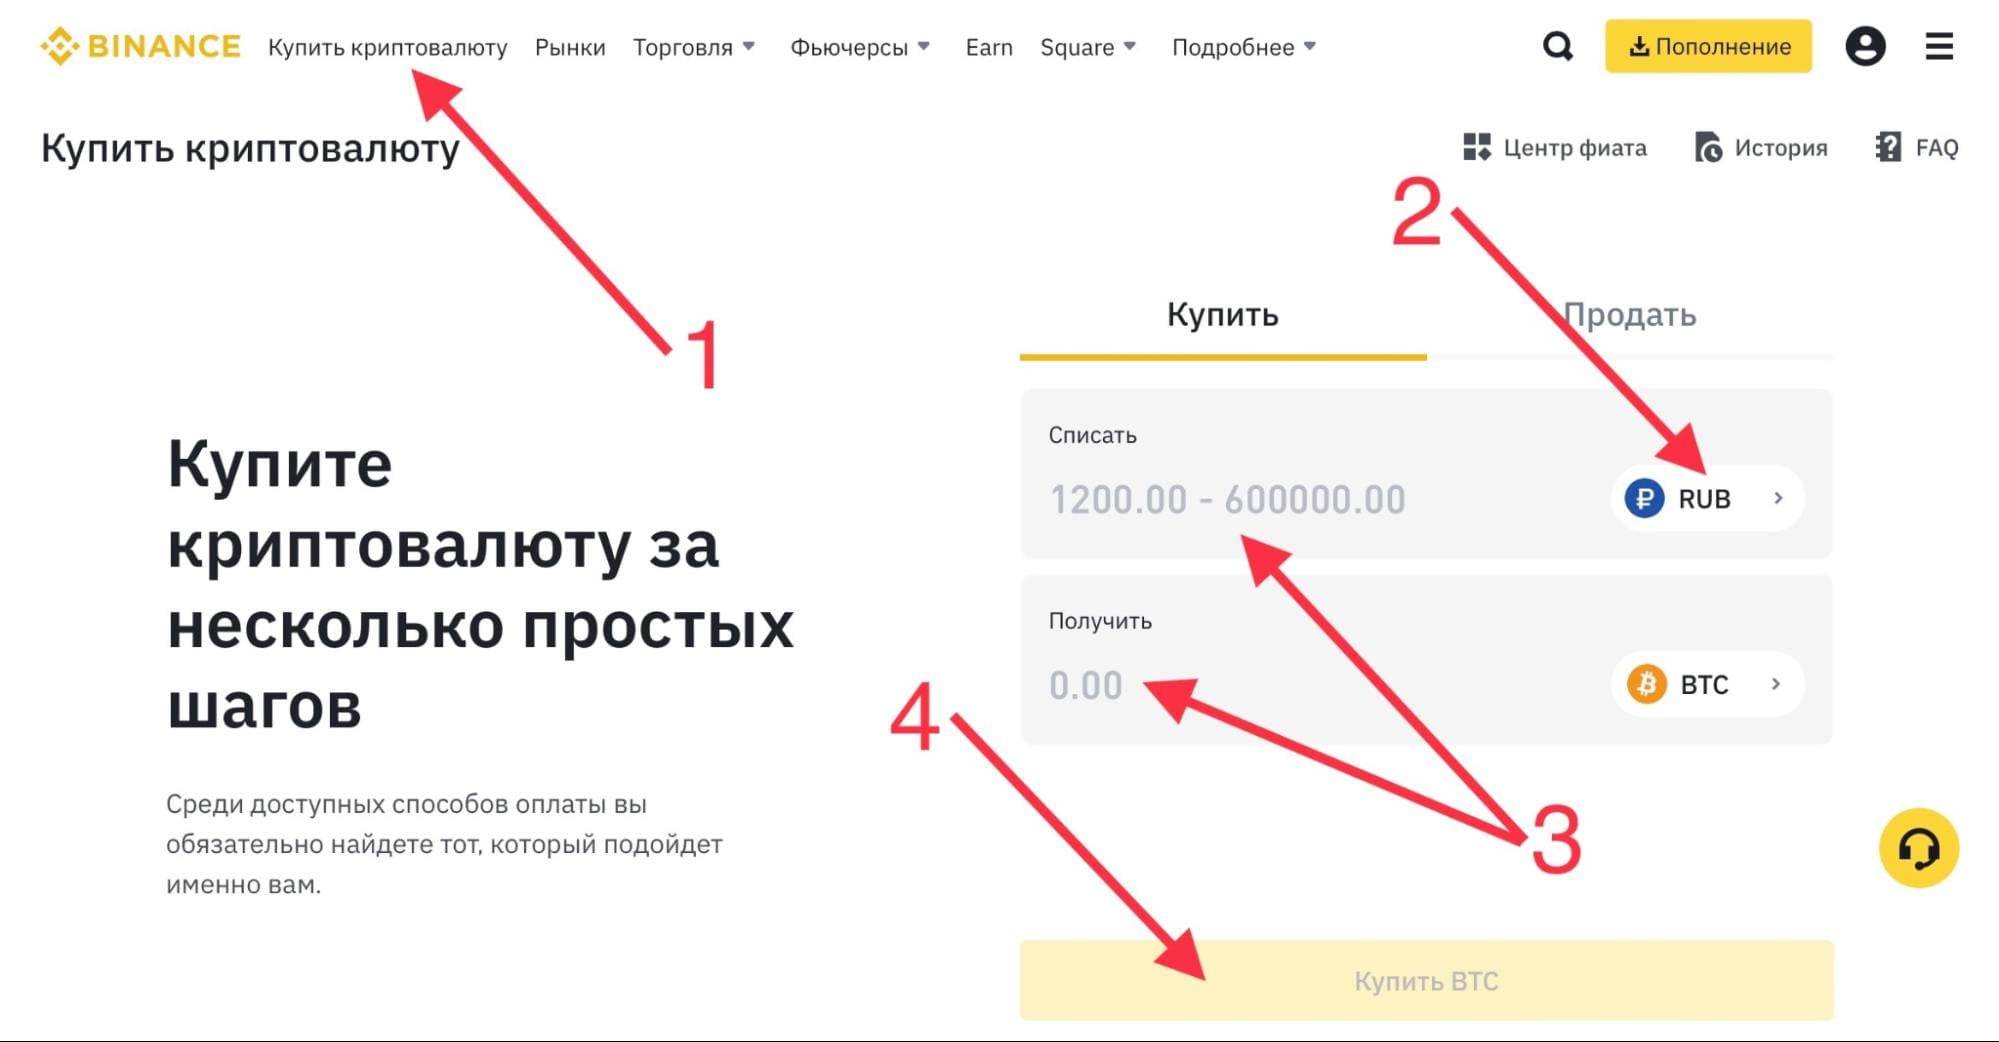 Купить криптовалюту за рубли